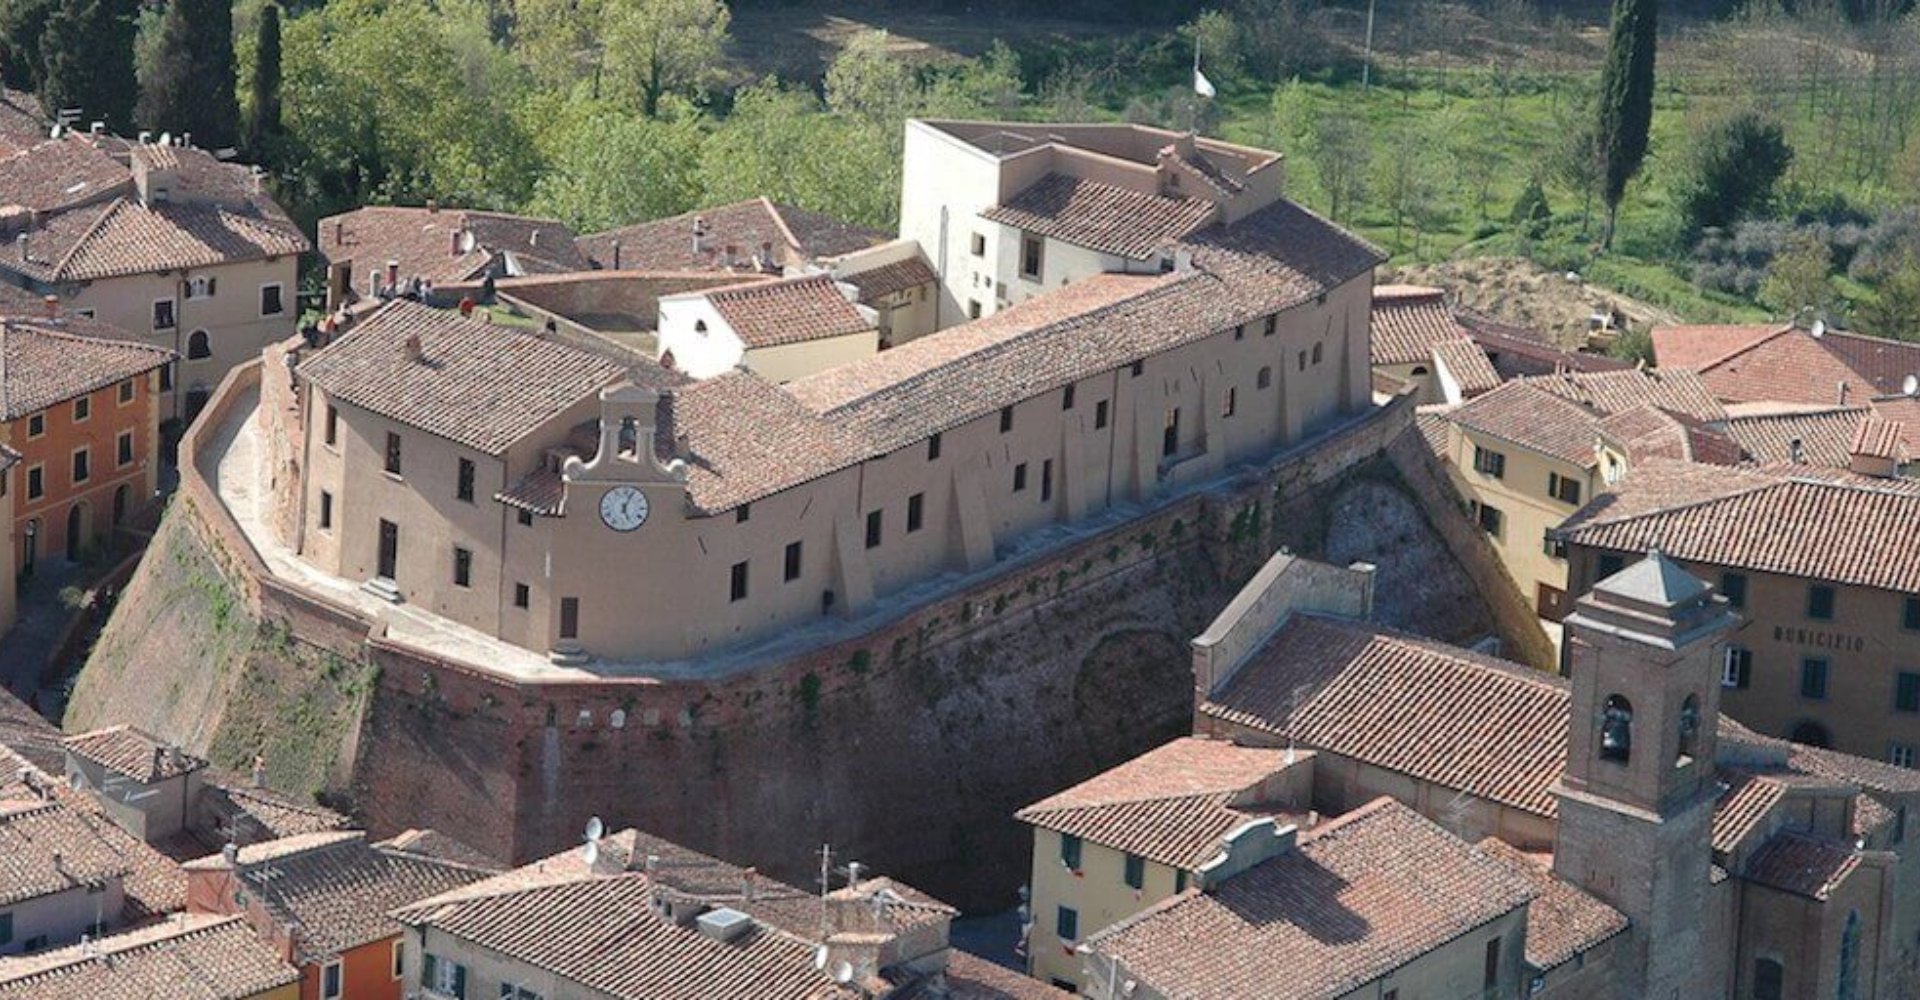 Lari-castello-vicari-museo-baldinucci